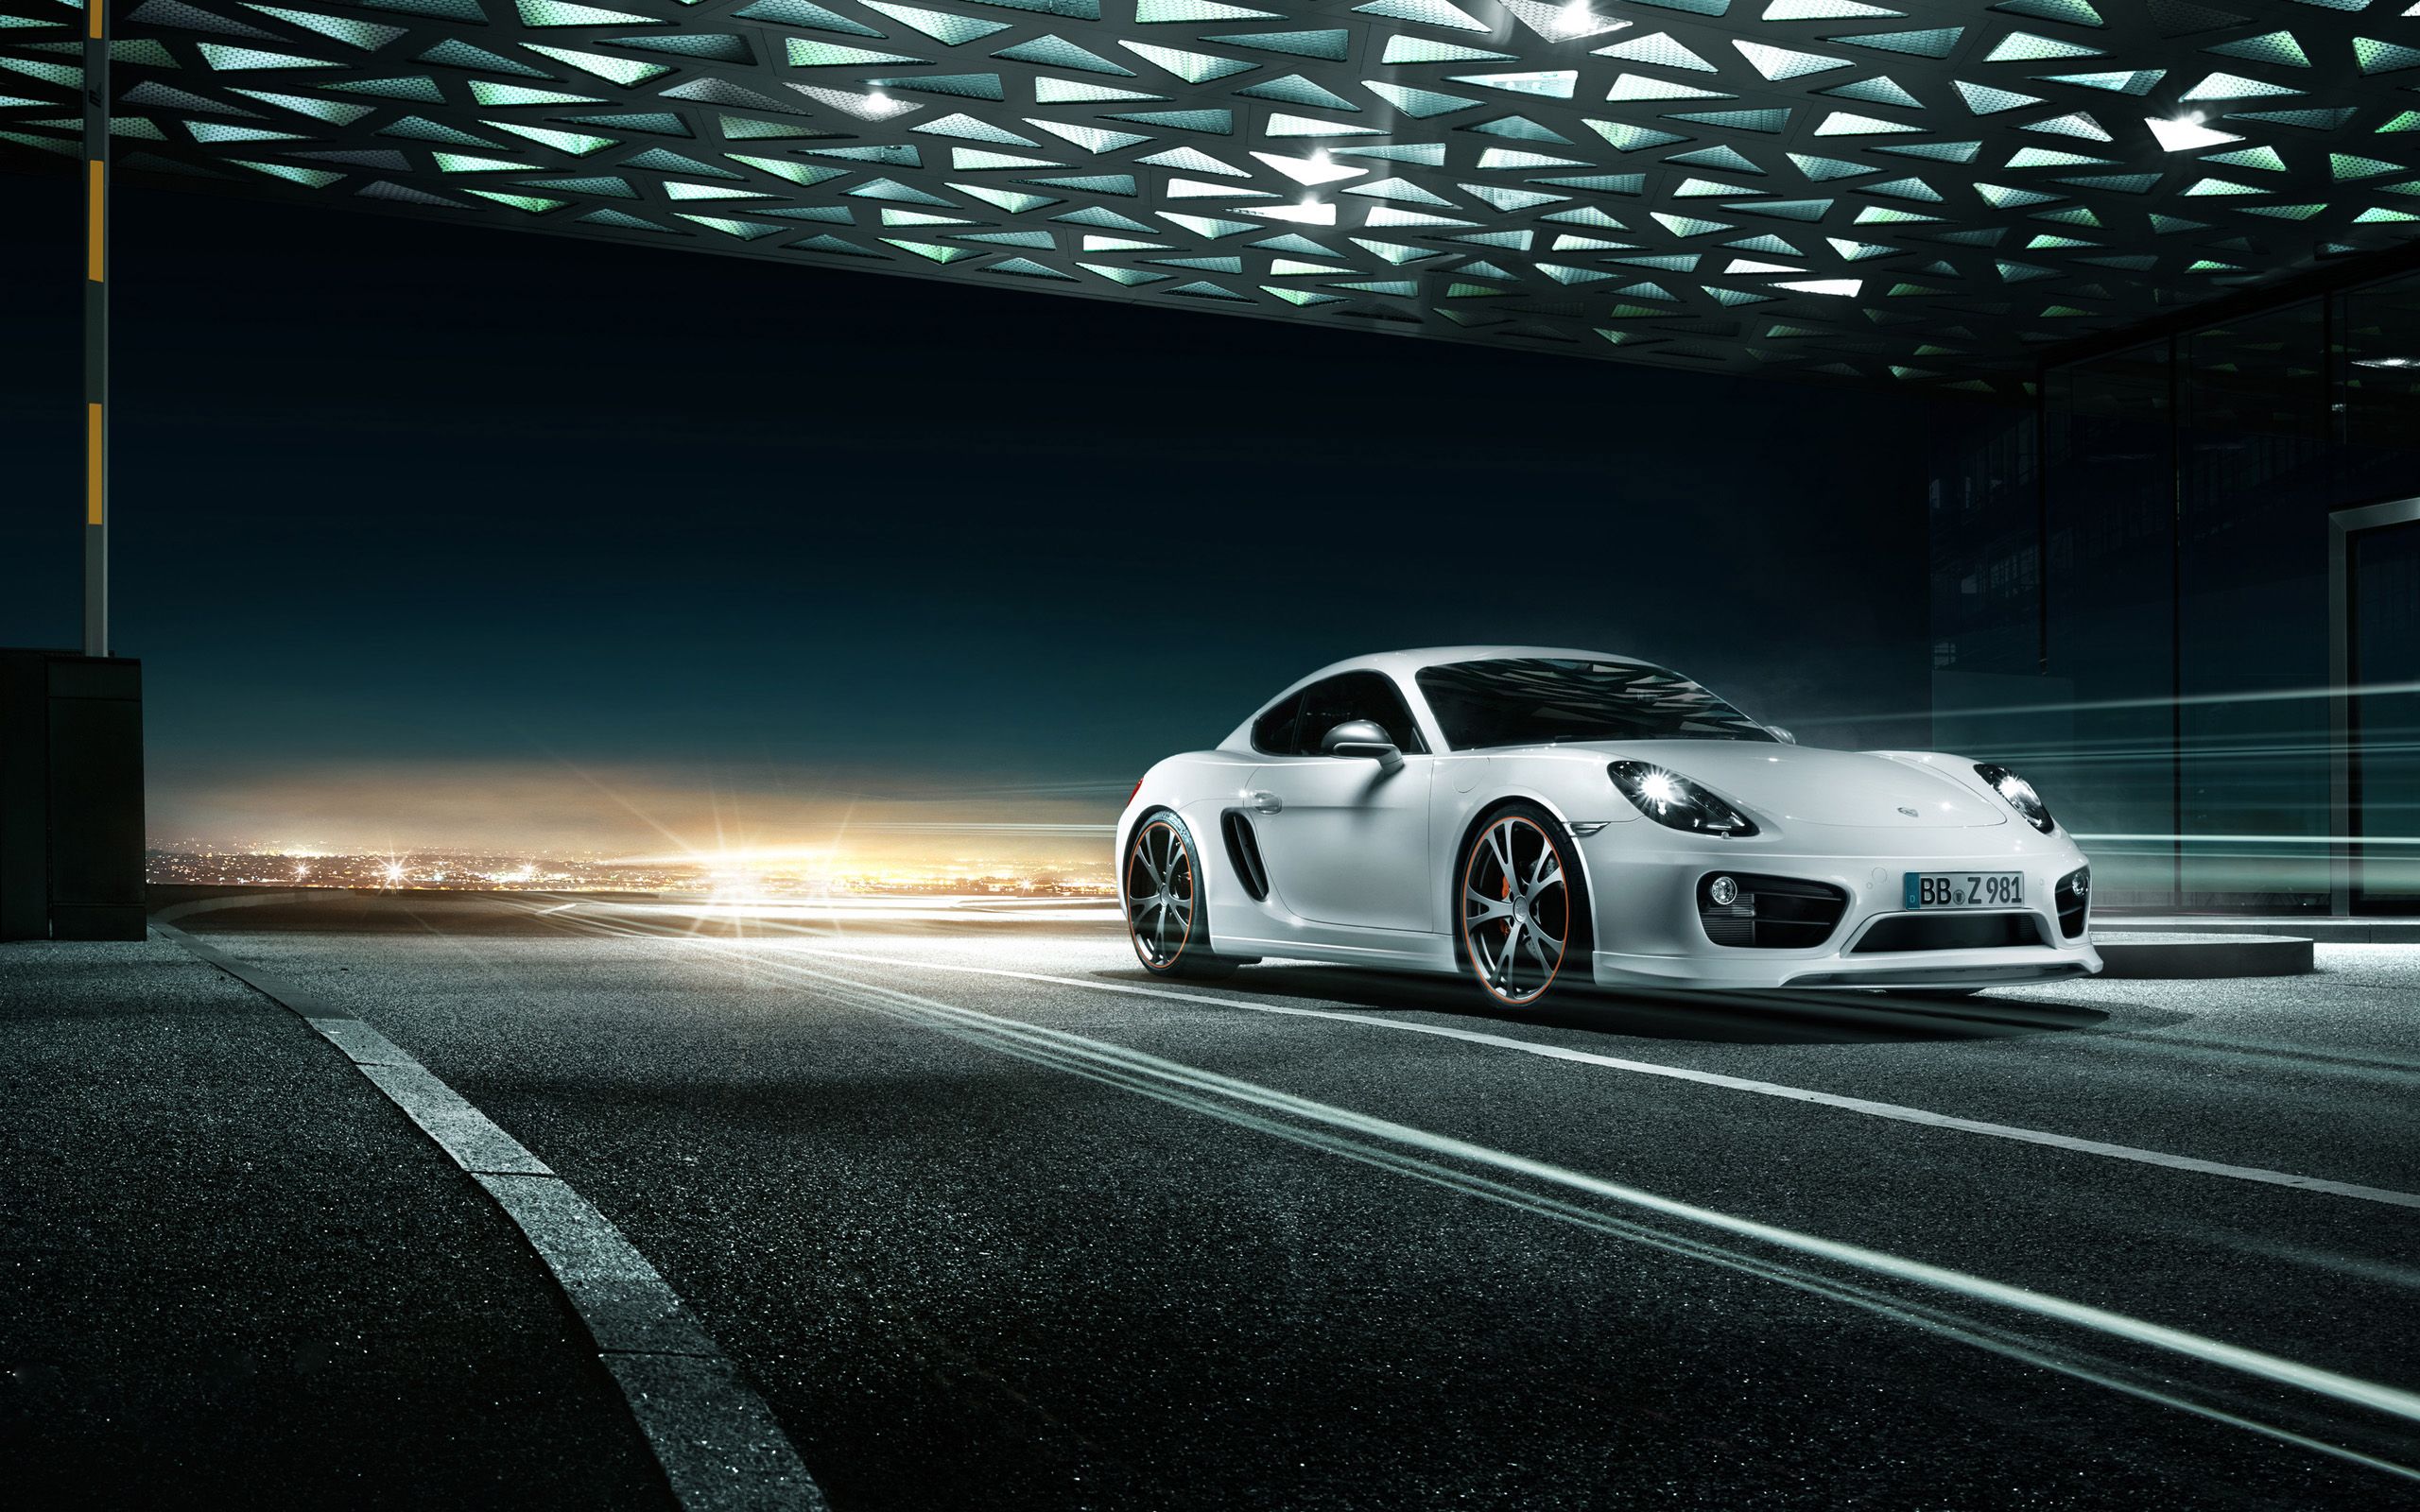 Hình nền Porsche: Với bức ảnh nền Porsche này, bạn sẽ cảm nhận được không khí mạnh mẽ và đầy sức sống của chiếc xe huyền thoại. Thiết kế đẹp mắt, sáng bóng, tạo nên sự uyển chuyển khiến cho chiếc Porsche luôn là đề tài trò chuyện của mọi buổi họp mặt.